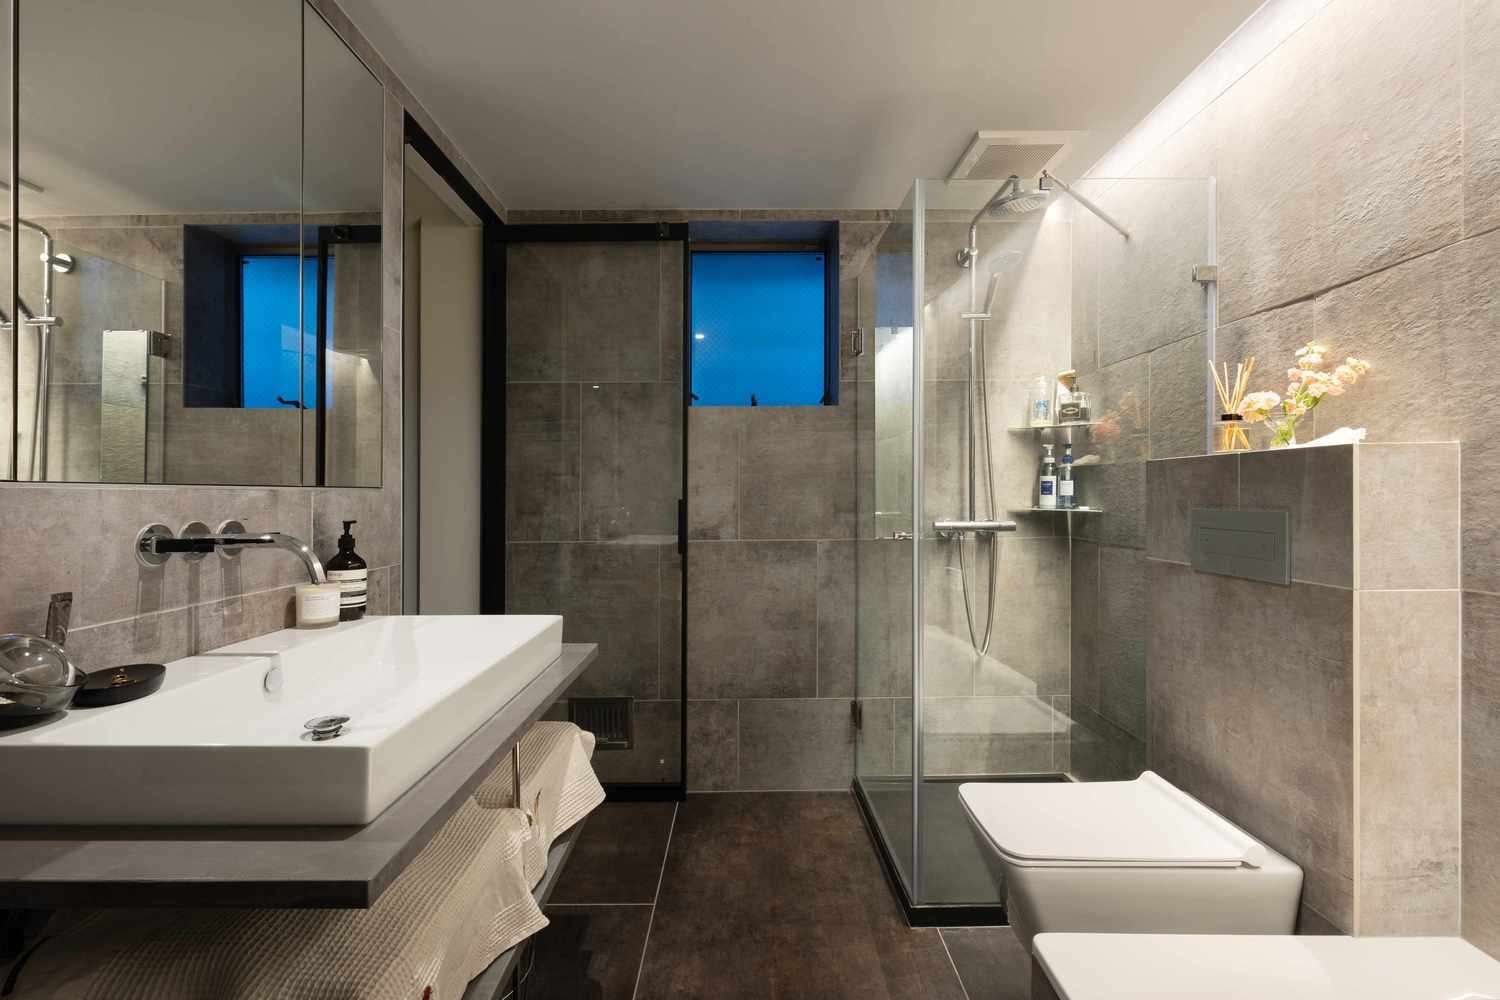 Phòng tắm và nhà vệ sinh được bố trí ở tầng 2 với gạch ốp lát màu xám sang trọng. Khu vực buồng tắm phân vùng với toilet bằng cửa kính trong suốt đẹp mắt.